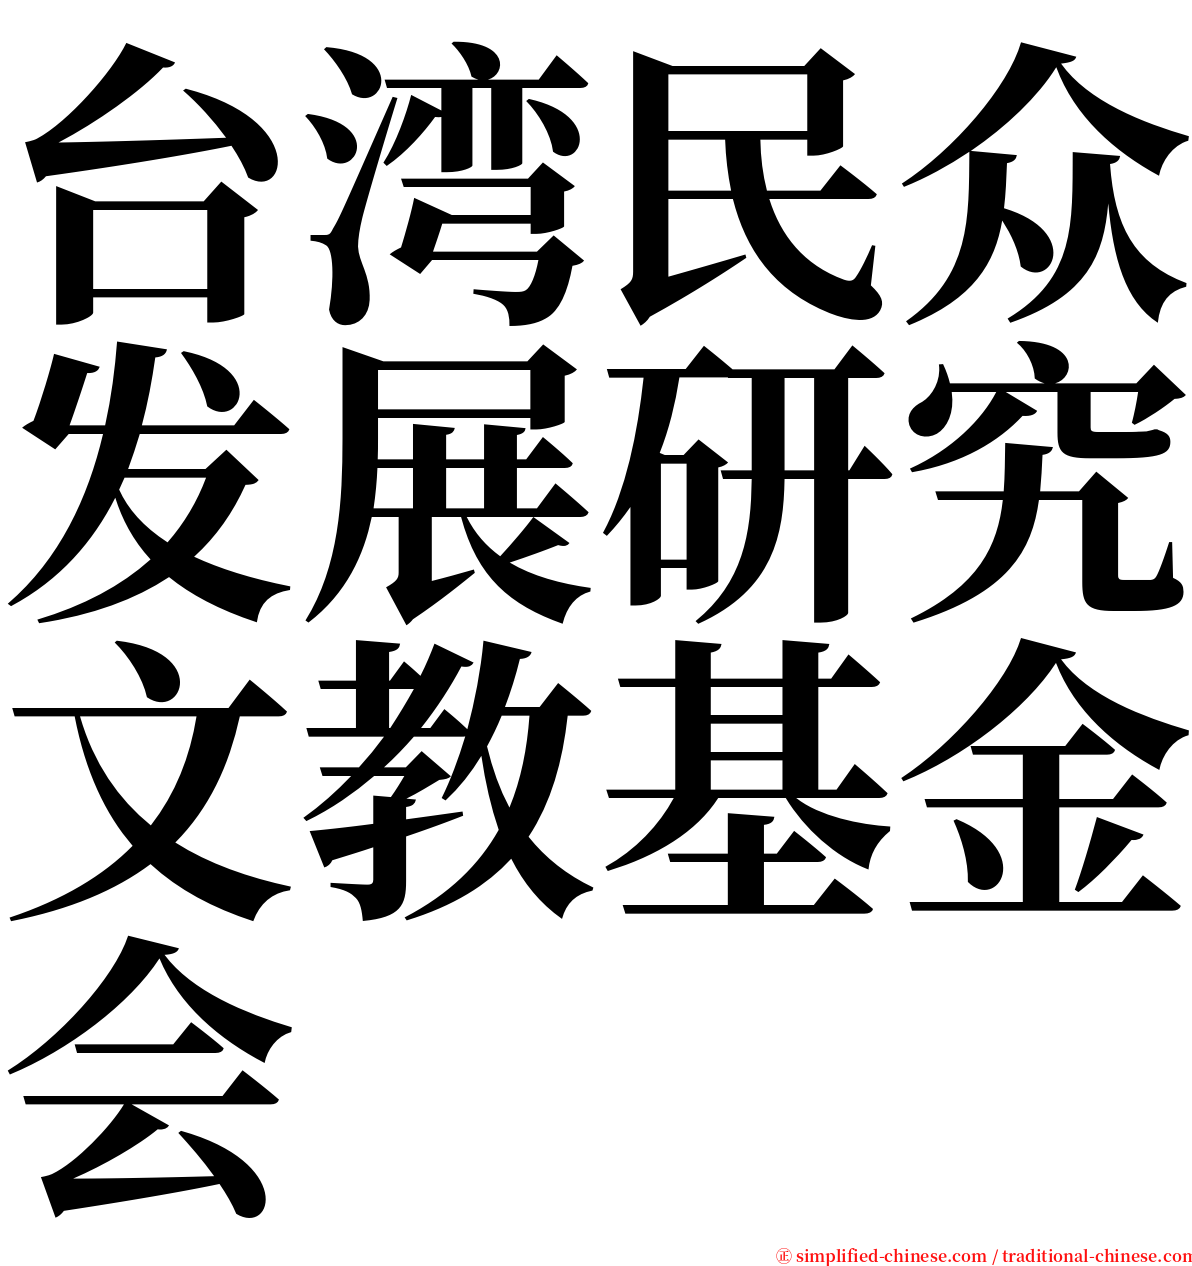 台湾民众发展研究文教基金会 serif font